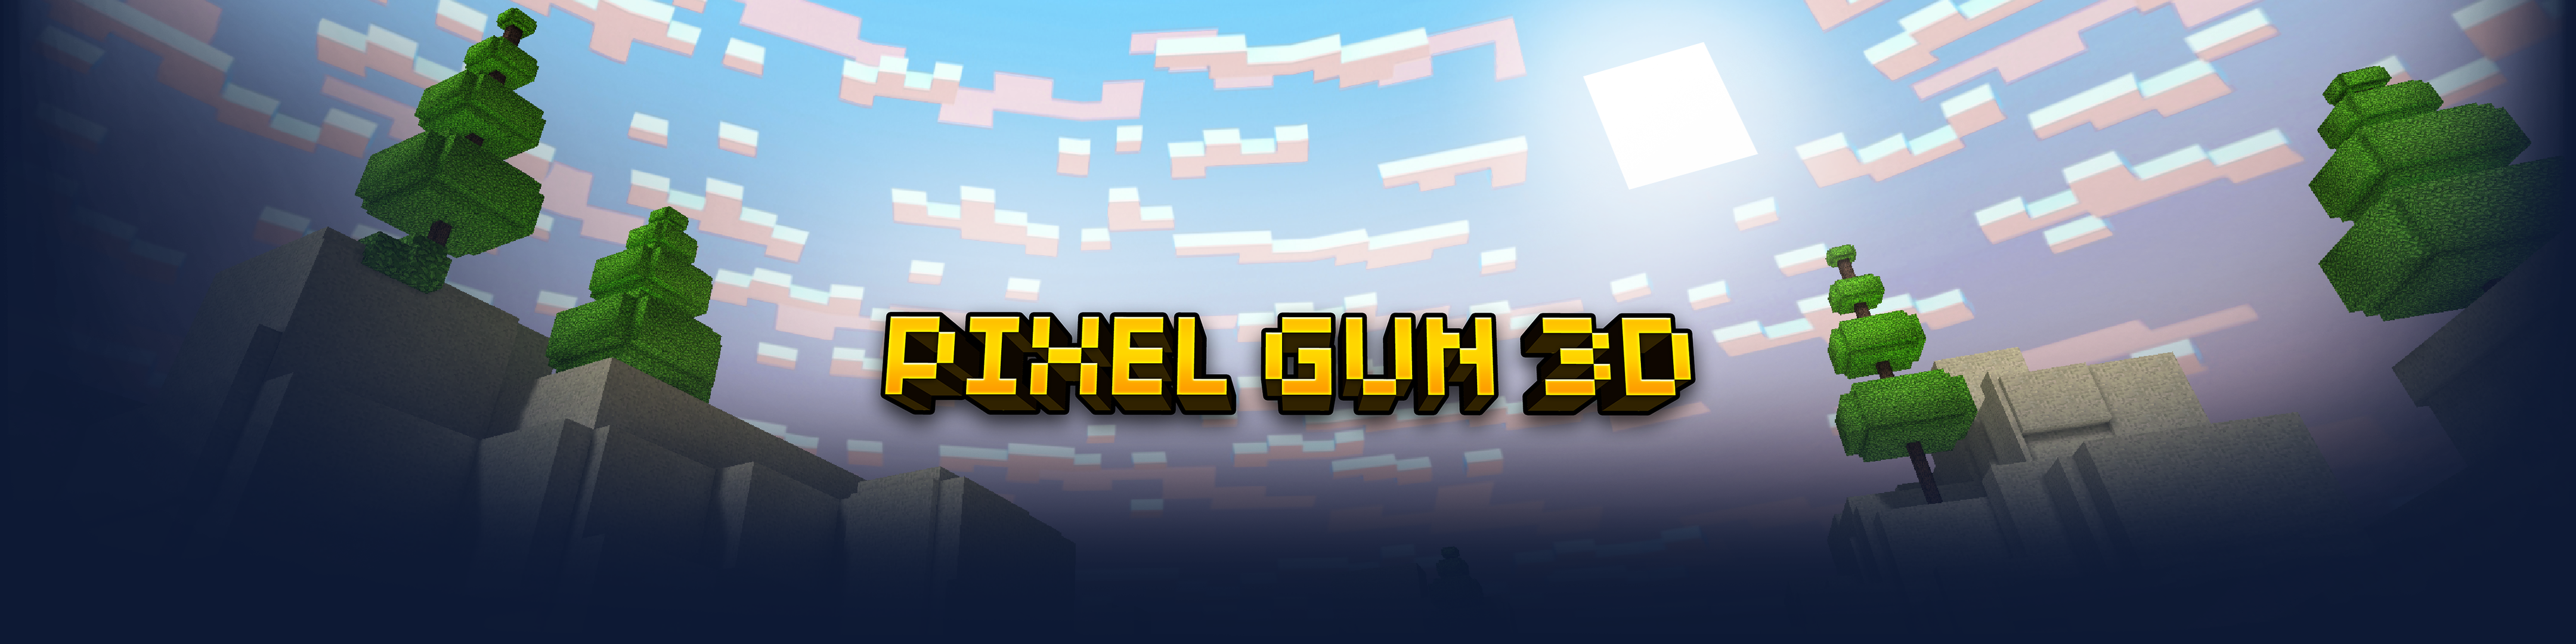 Pixel Gun 3d Fps Pvp Shooter Overview Apple App Store Australia - gun pvp roblox